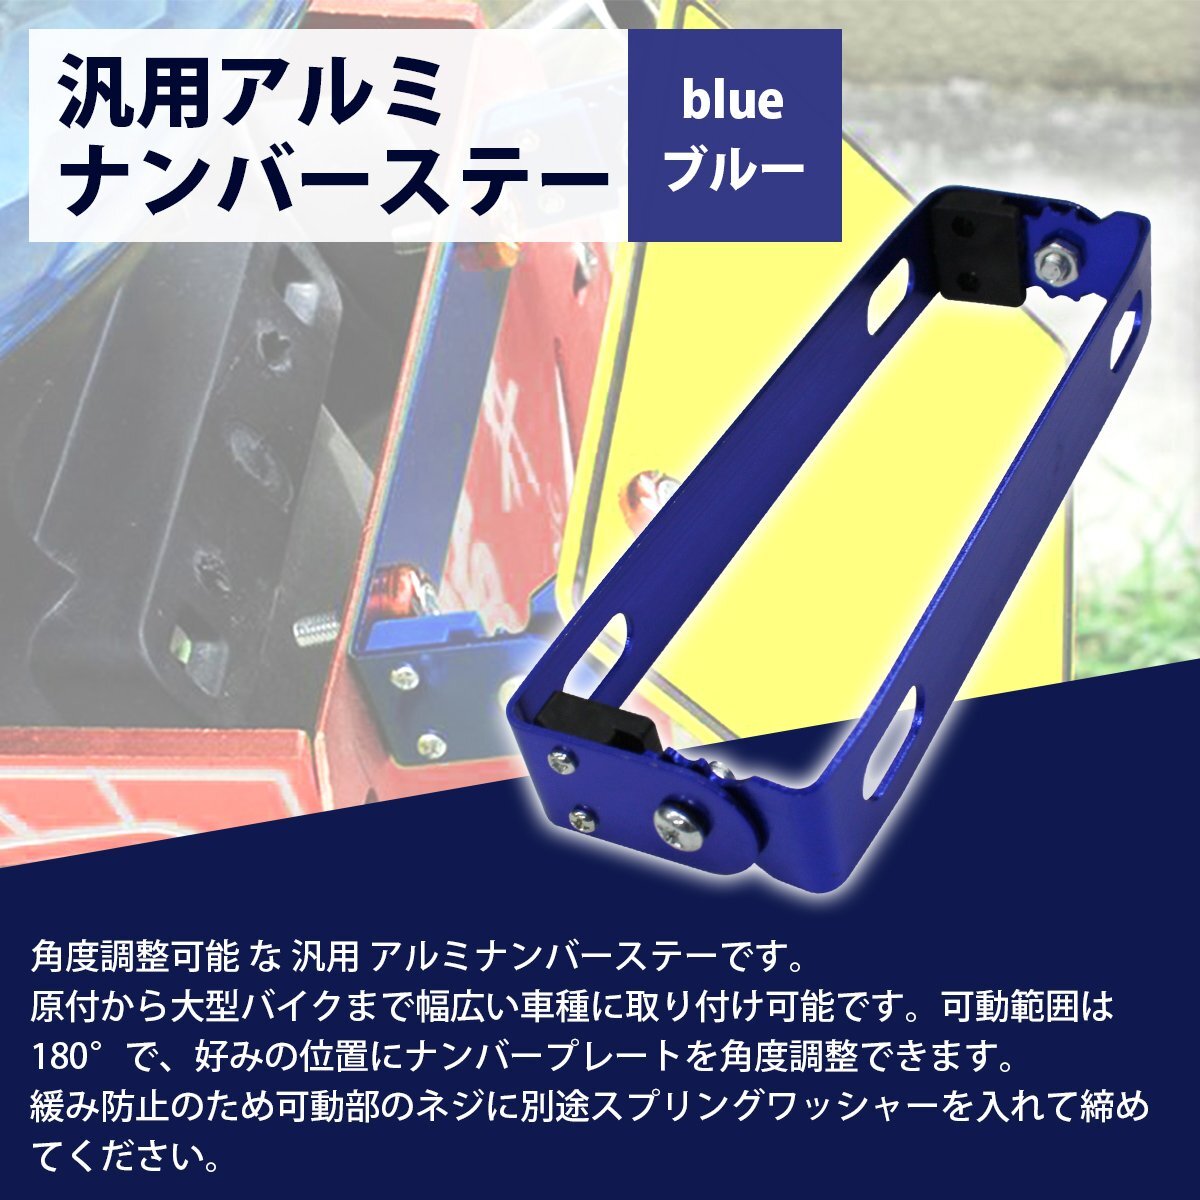 【送料無料】 ブルー 青 バイク ナンバー ステー 角度 調整 可変式 汎用 原付 中型 大型 スクーター 180°アルミ プレート ステイ_npst-a-001-bl-01-a